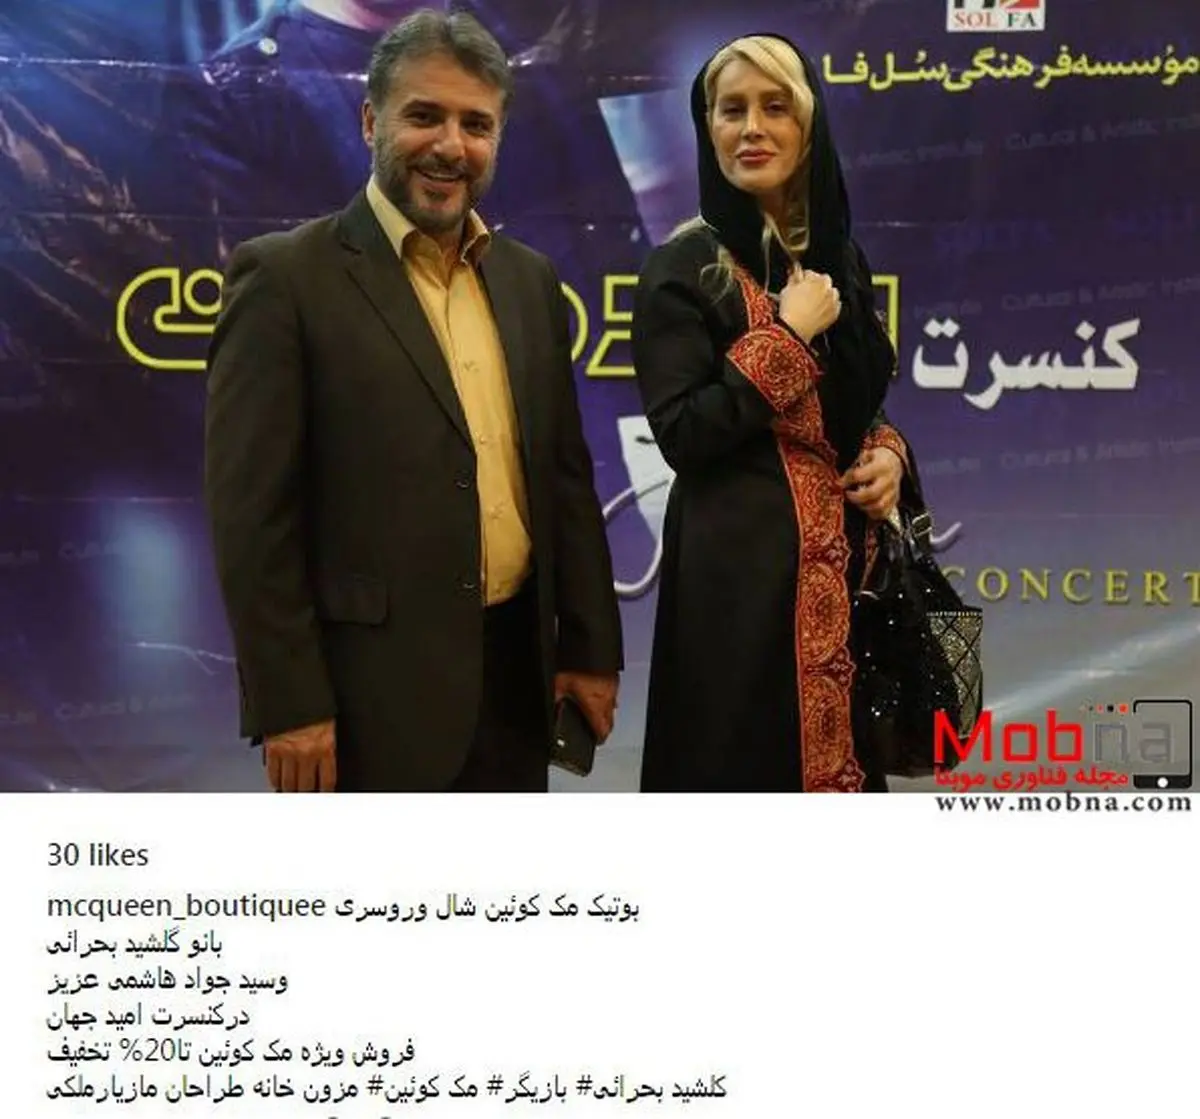 سیدجواد هاشمی به همراه گلشید بحرایی در کنسرت امید جهان (عکس)